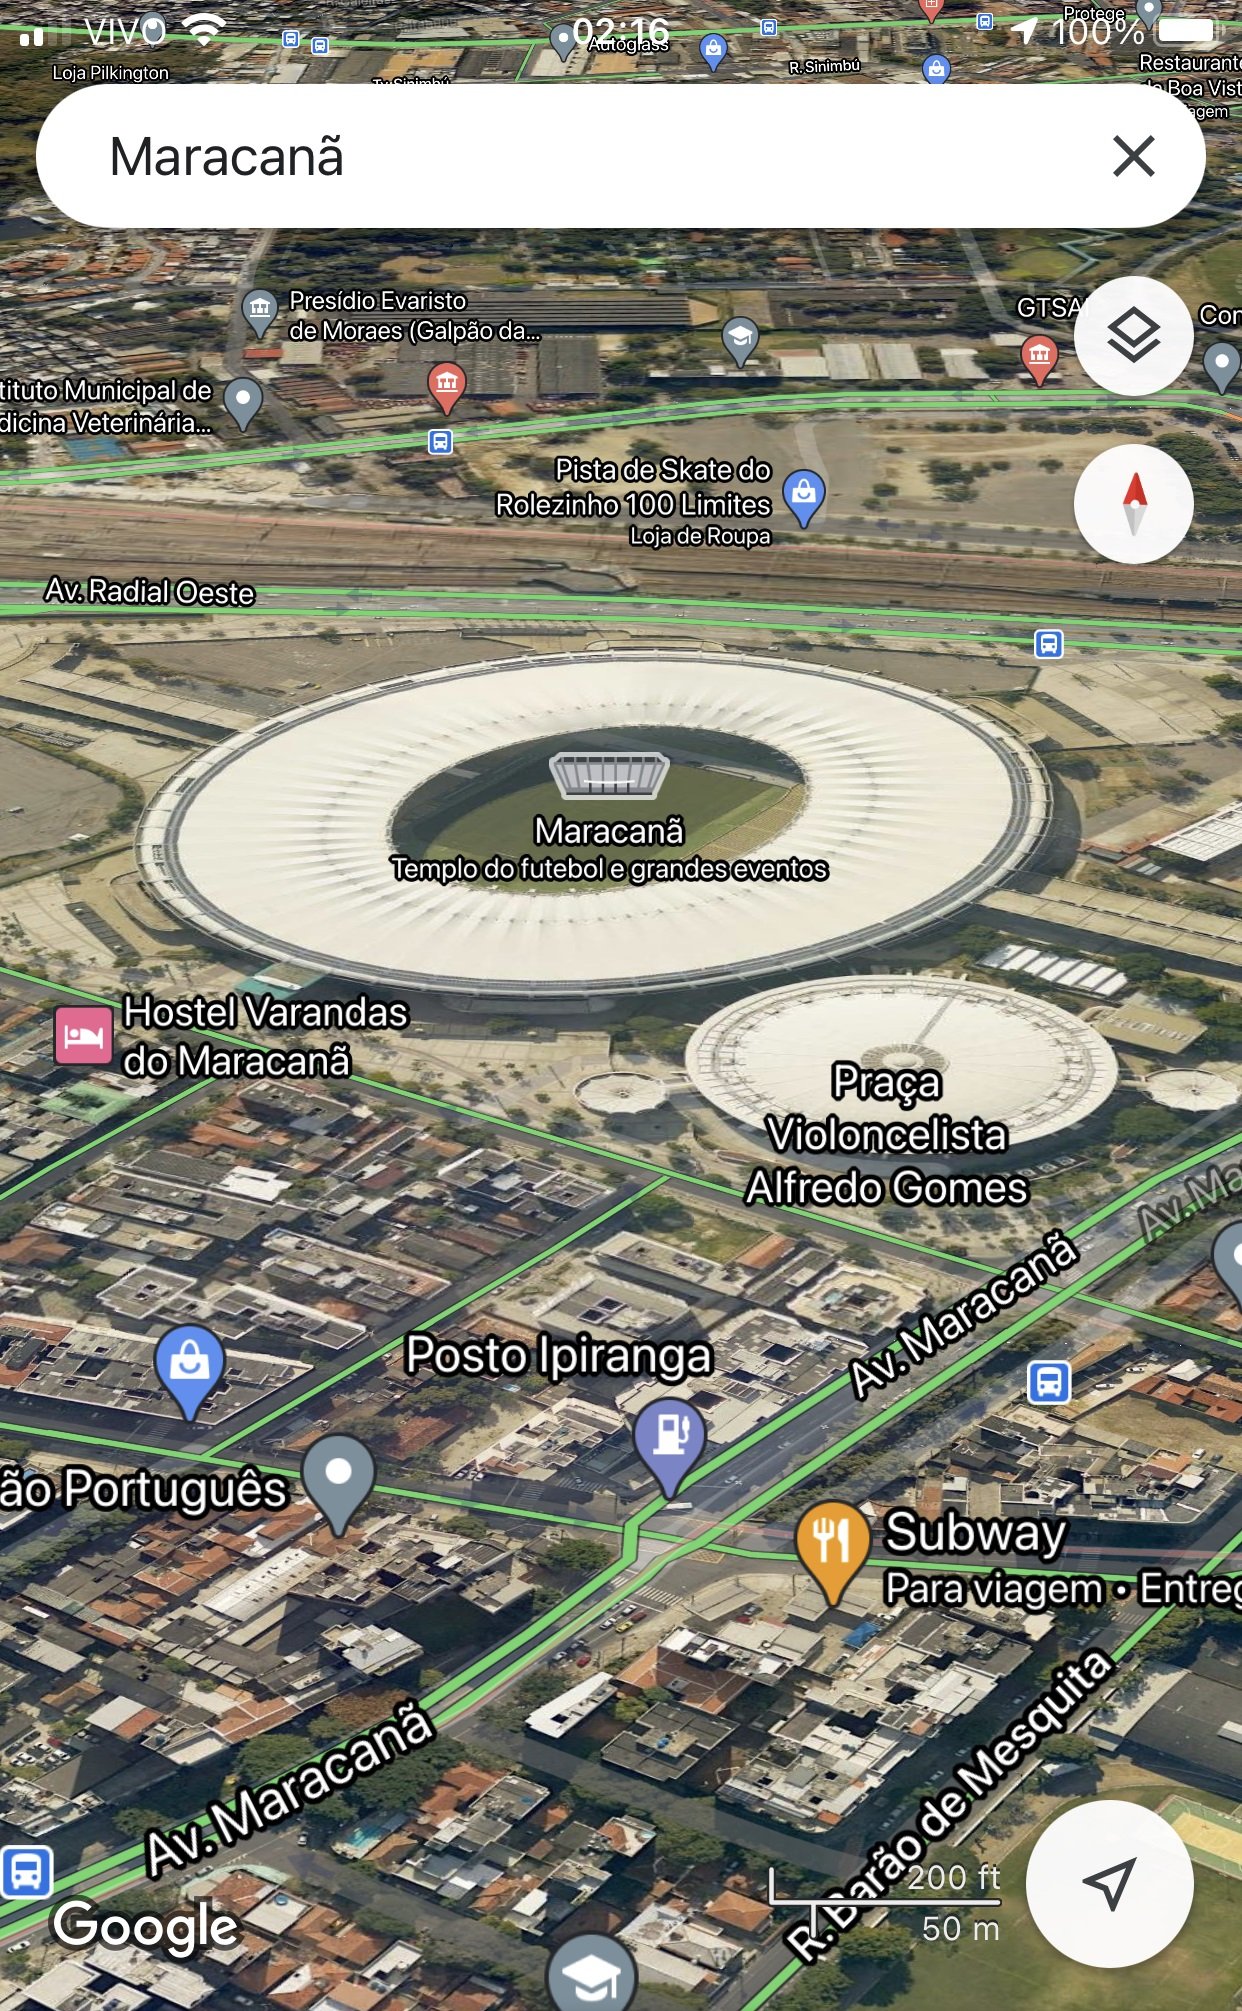 Também é possível ter a visualização em 3D no app do Google Maps para dispositivos móveis